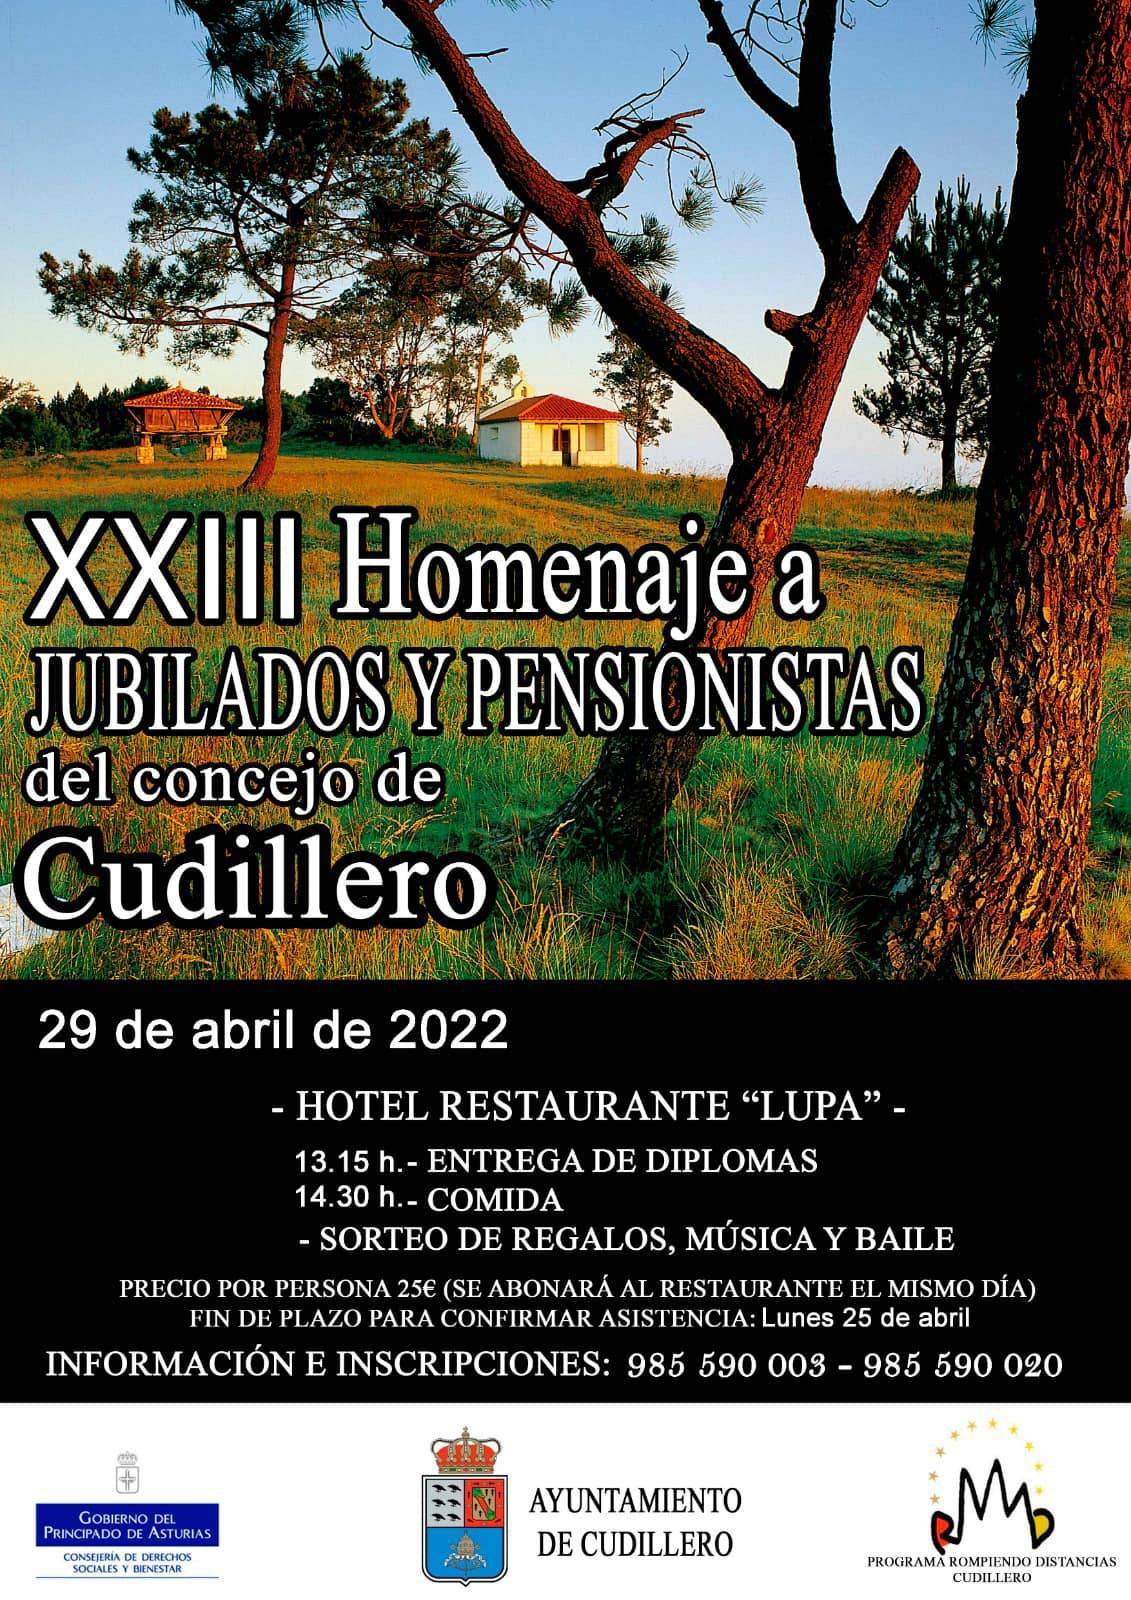 XXIII Homenaje a Jubilados y Pensionistas - Cudillero (Asturias)